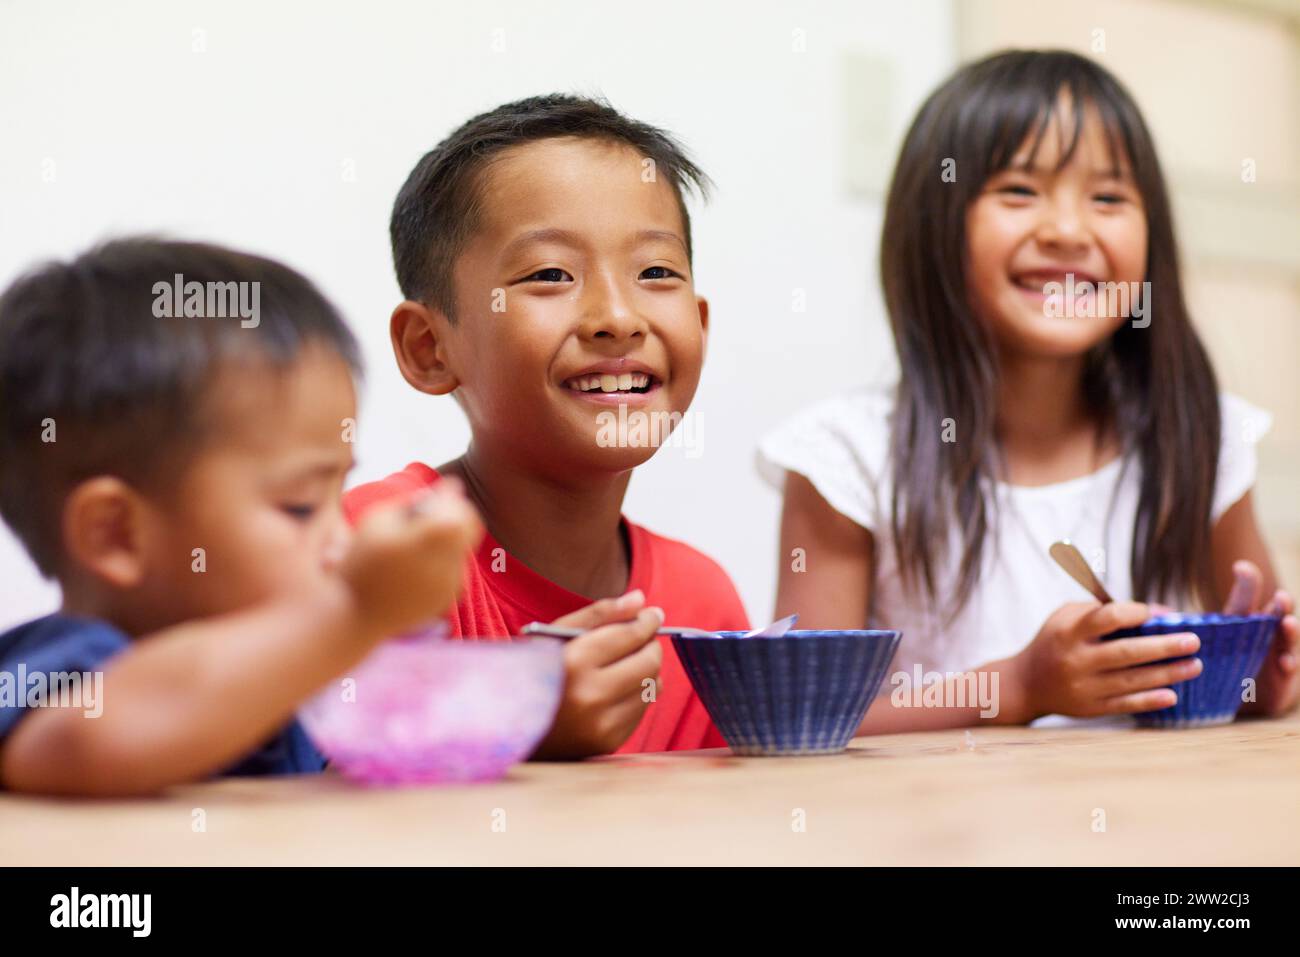 Niños comiendo hielo afeitado Foto de stock